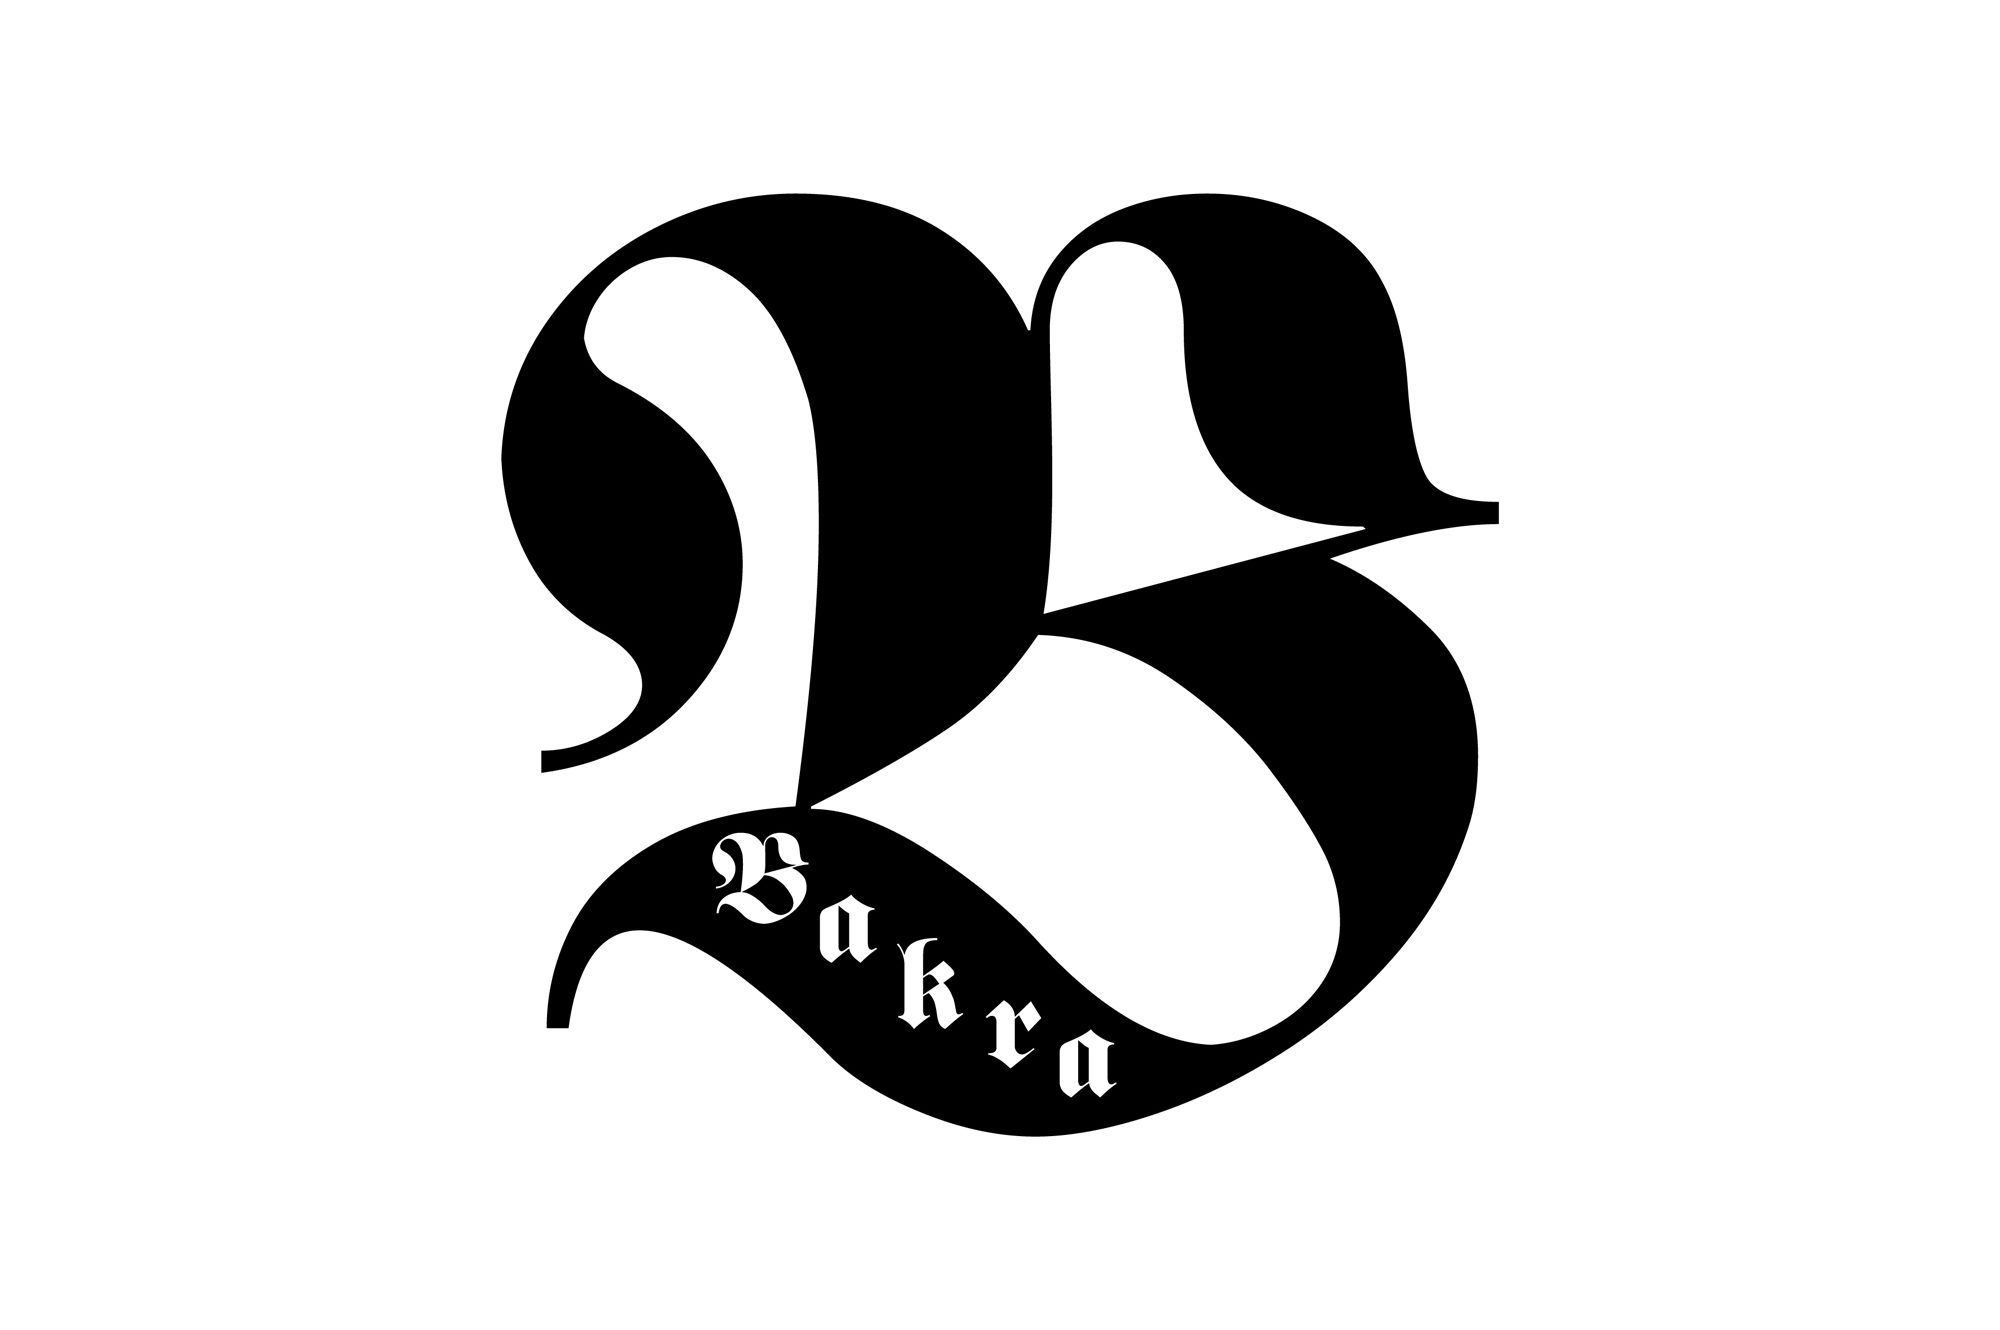 Bakra - logo PLANSZA 30x30cm EDYCJA